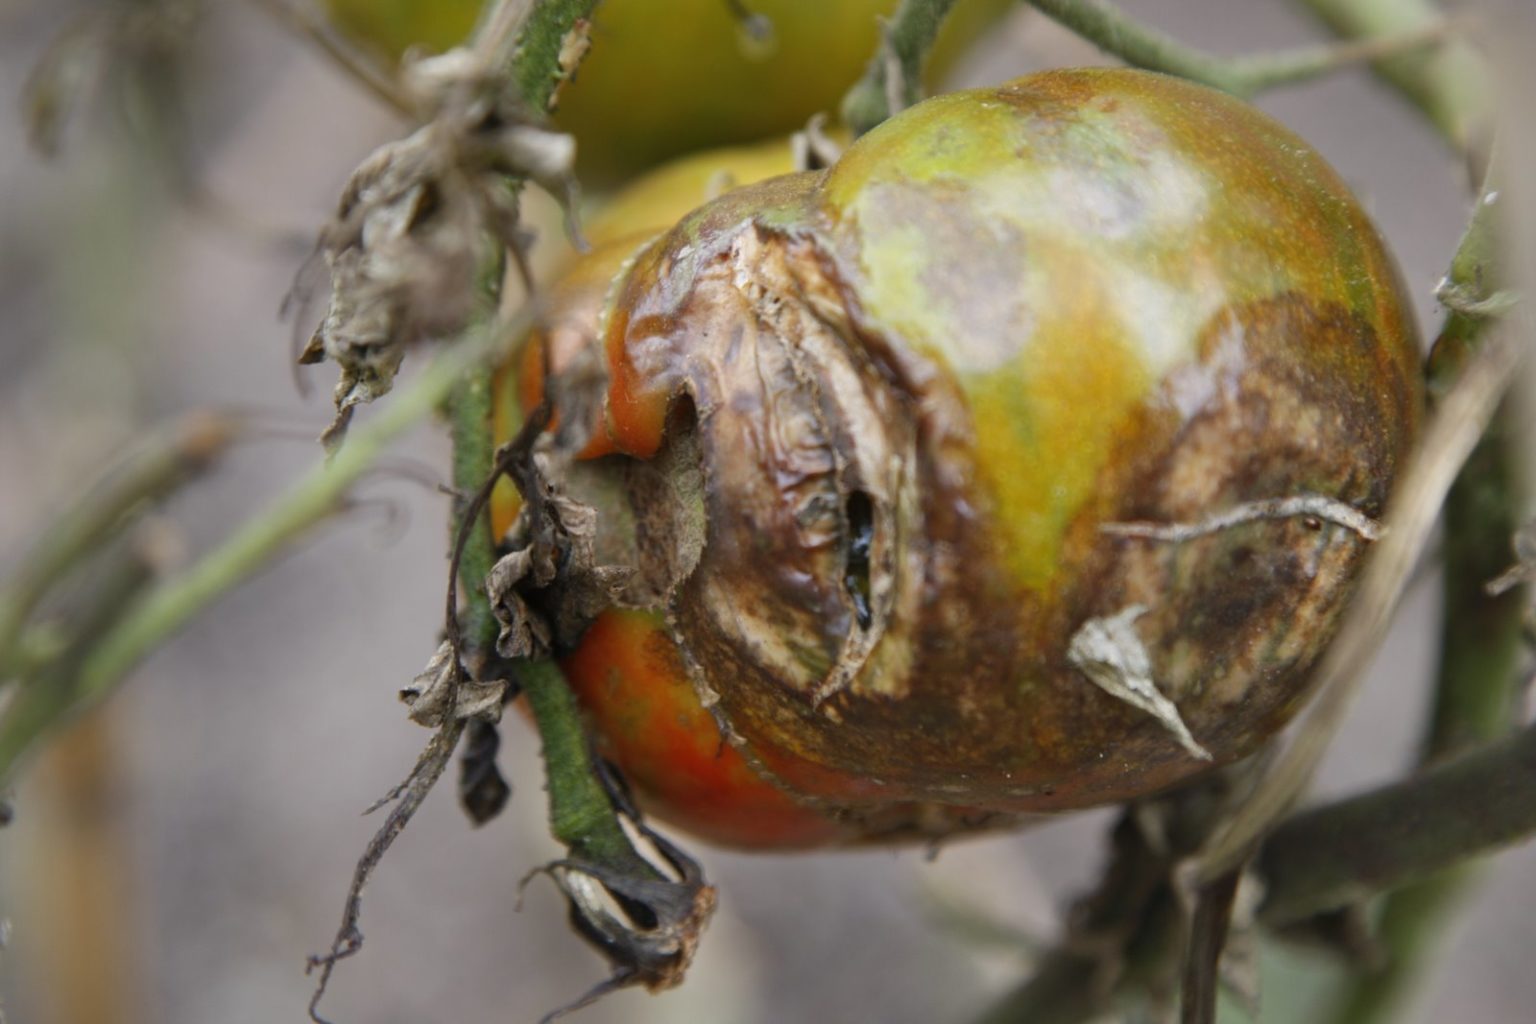 The tomato blight in my garden - The Martha Stewart Blog